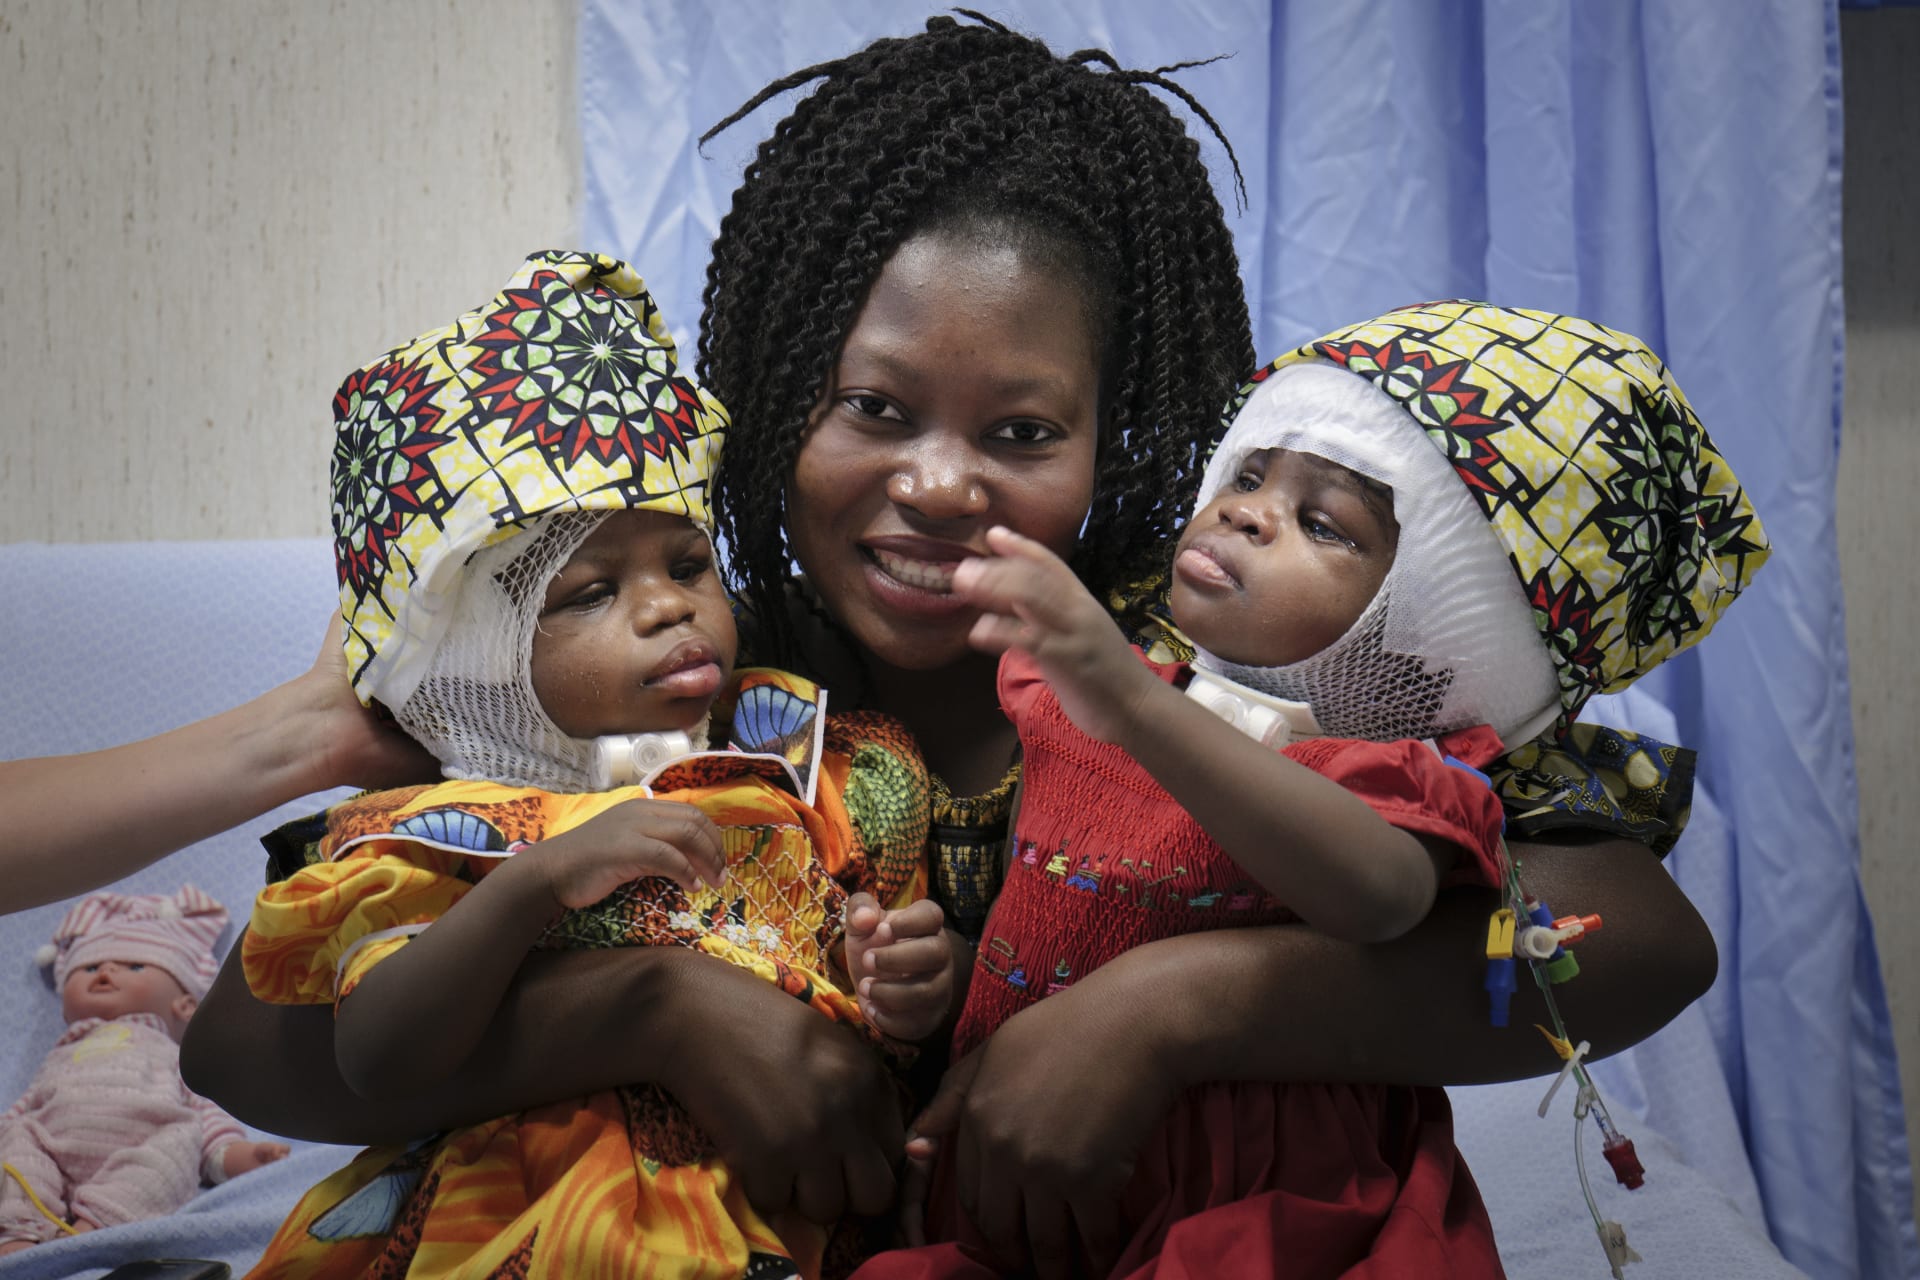 Děvčátka pojmenovaná Ervina a Prefina se narodila ve Středoafrické republice v červnu 2018. 